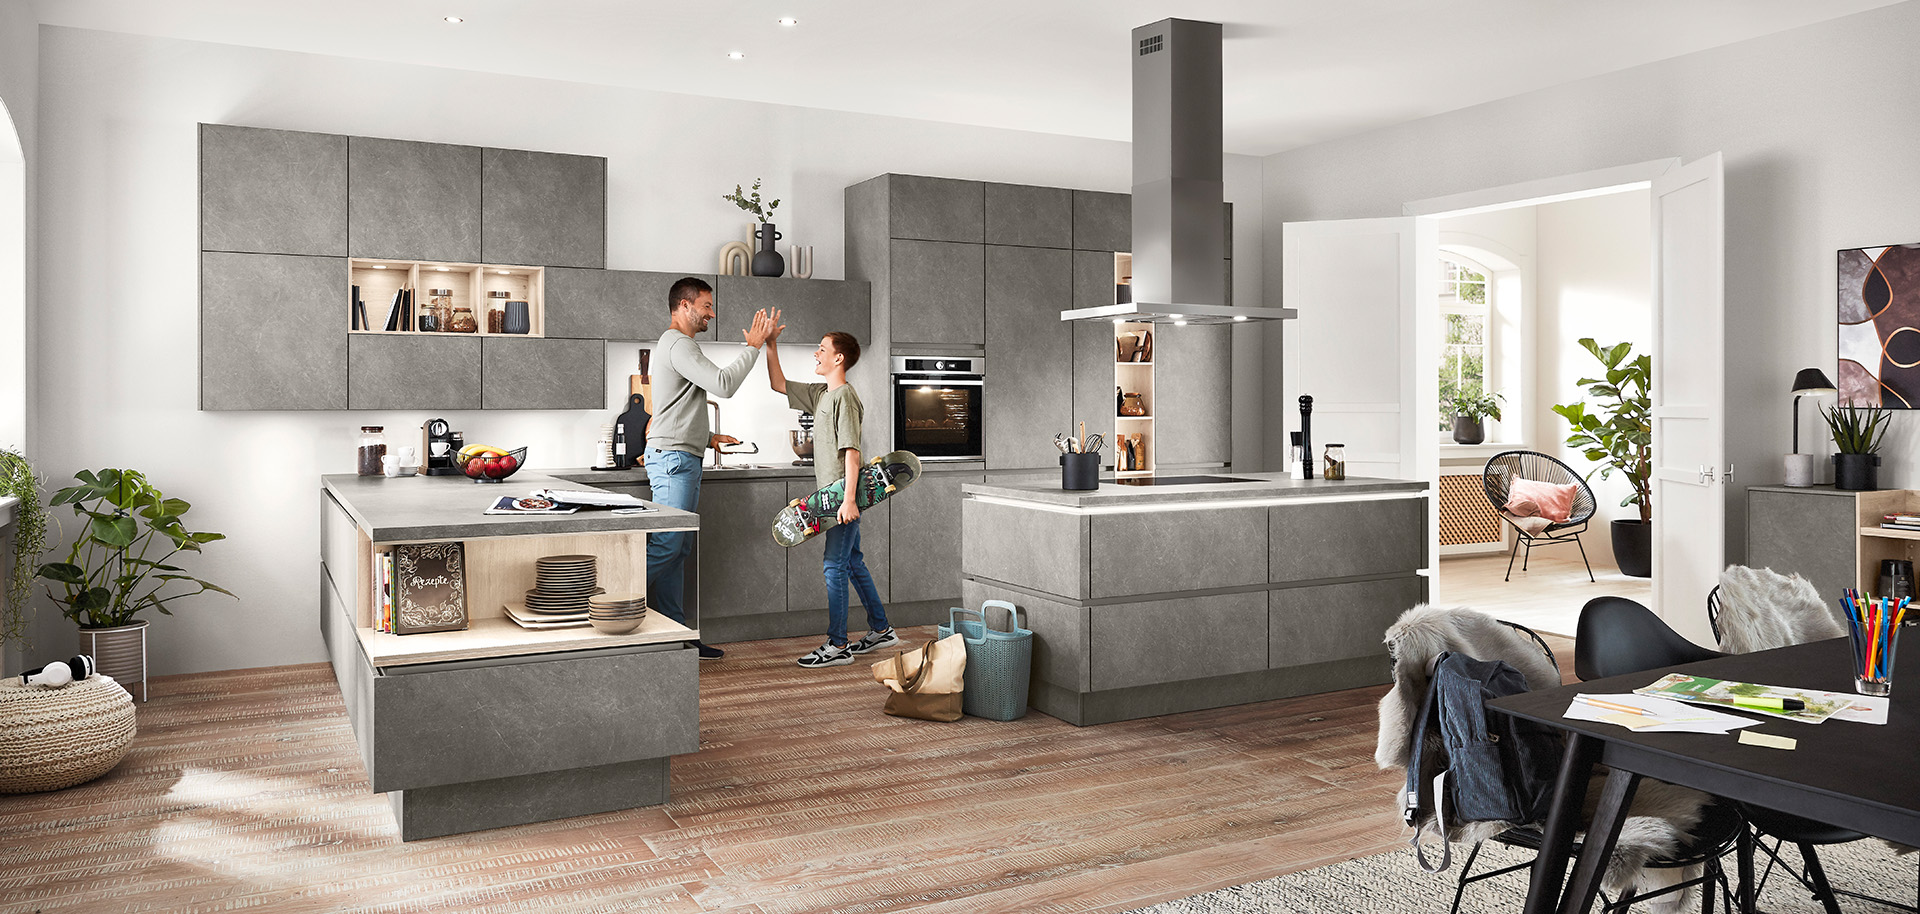 Una cocina moderna y espaciosa con una pareja comprometida en una conversación alegre, rodeada de gabinetes grises elegantes y decoración elegante bajo la iluminación natural.